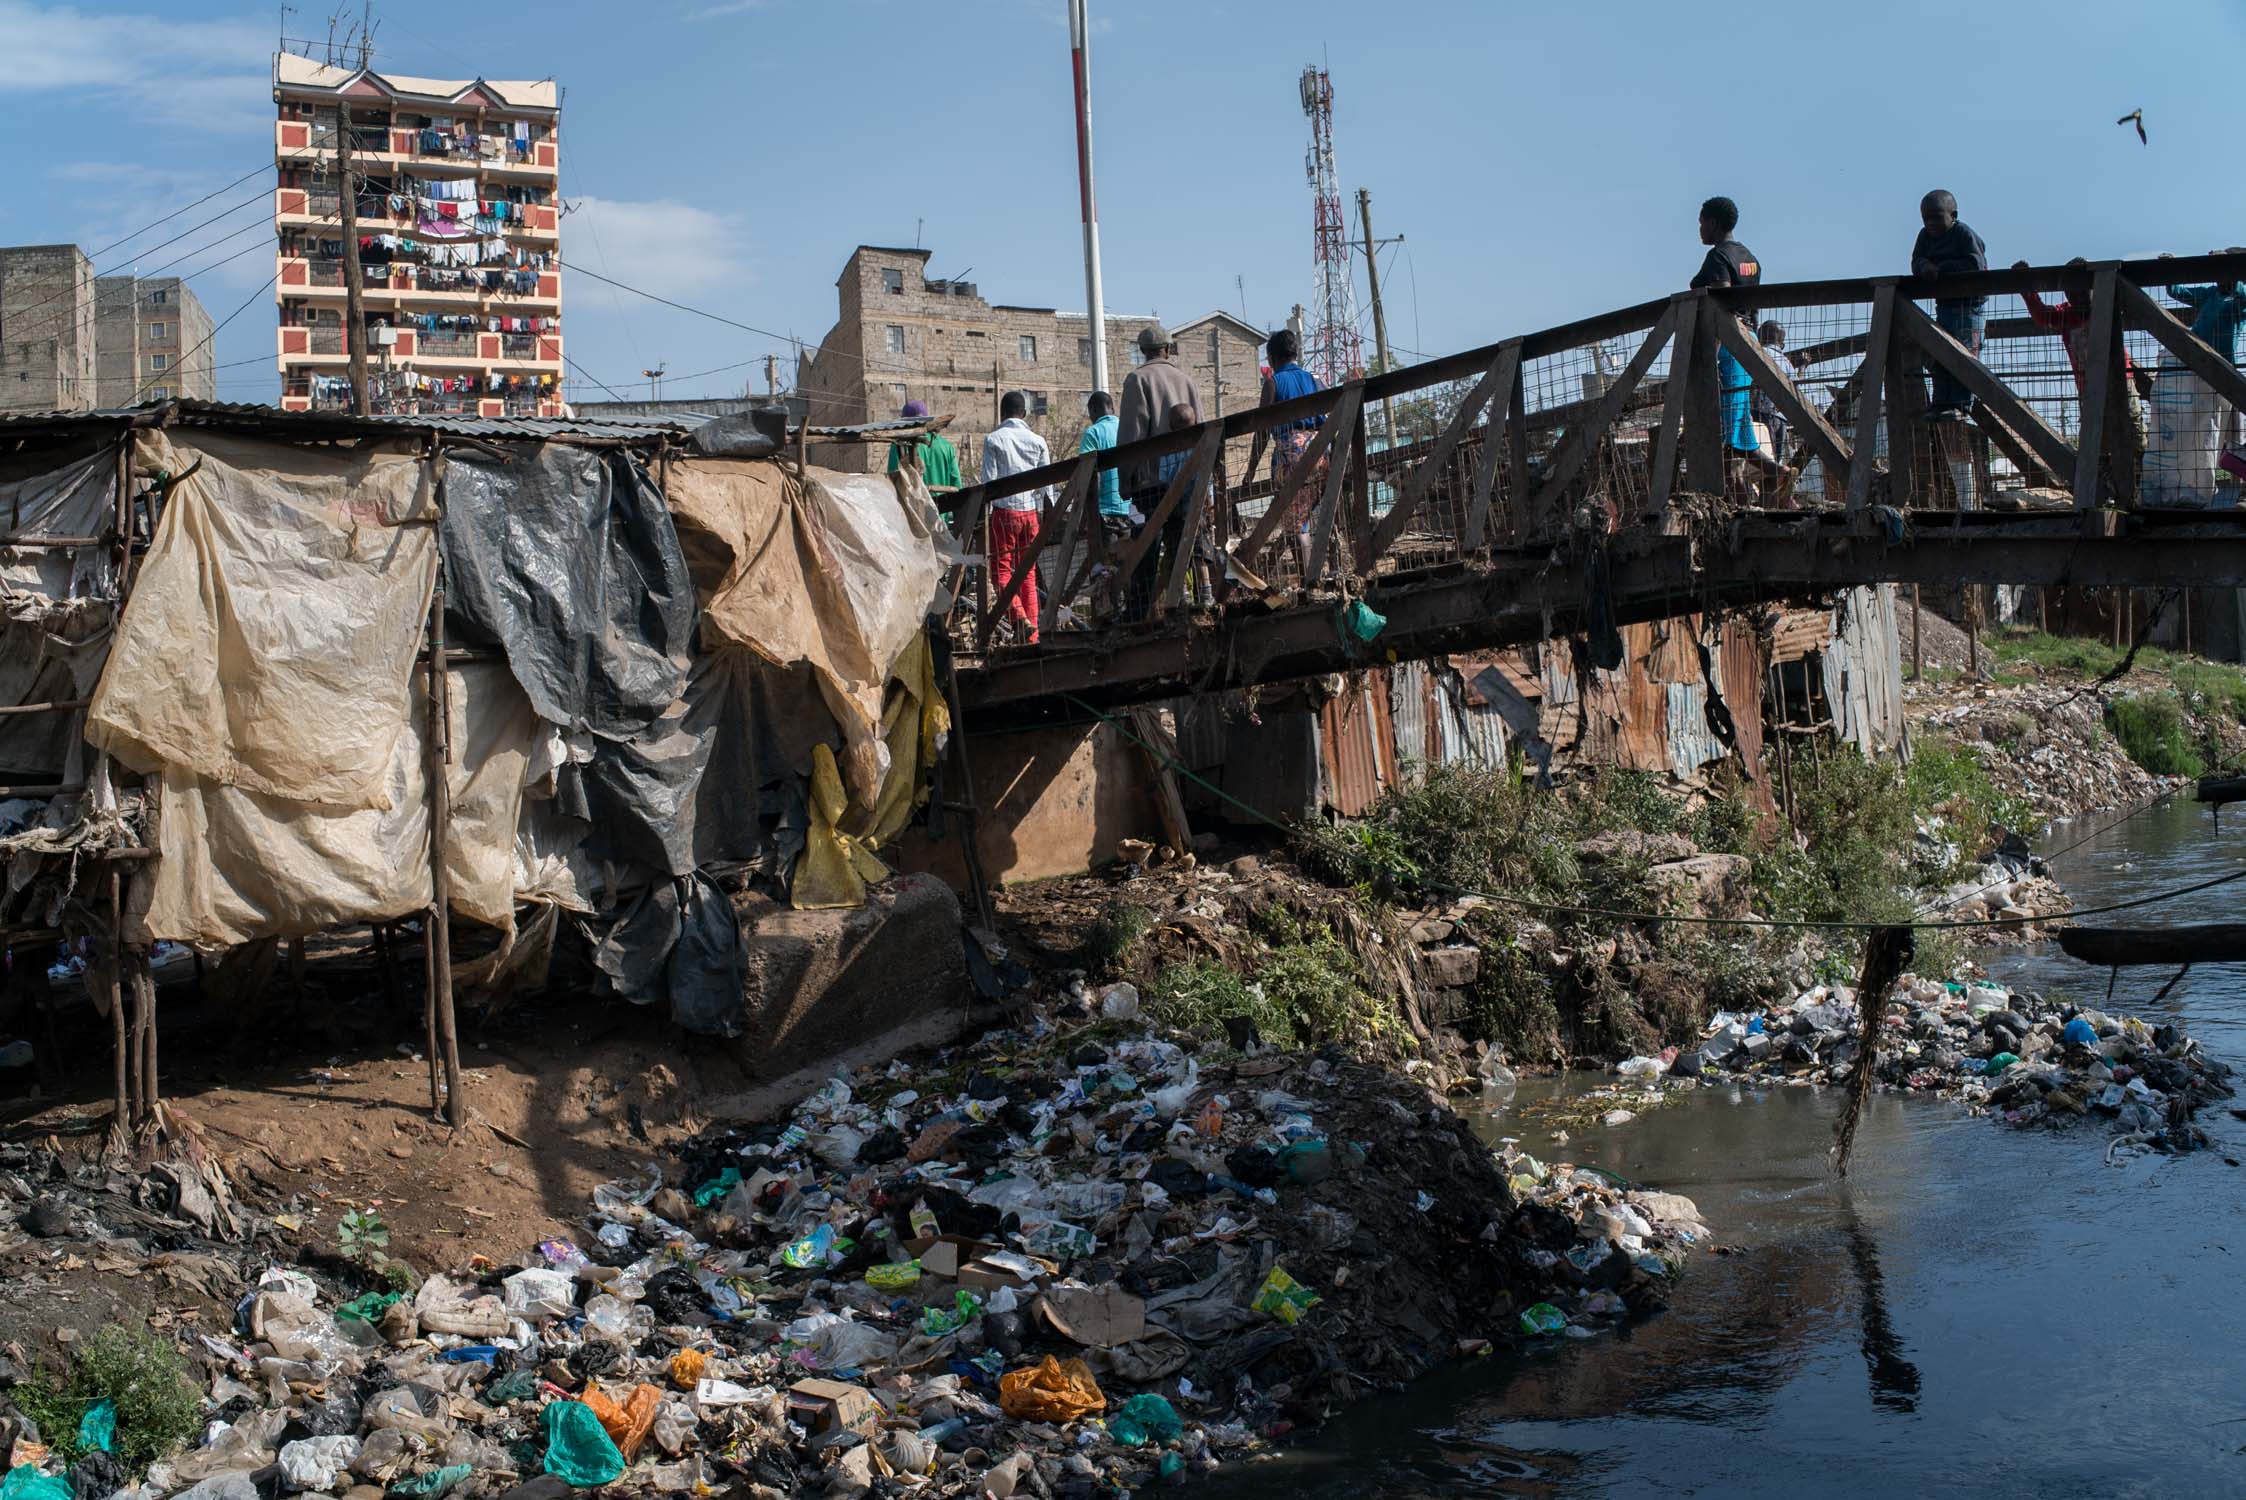  Mathare slum in Nairobi, Kenya. September 19, 2016. 